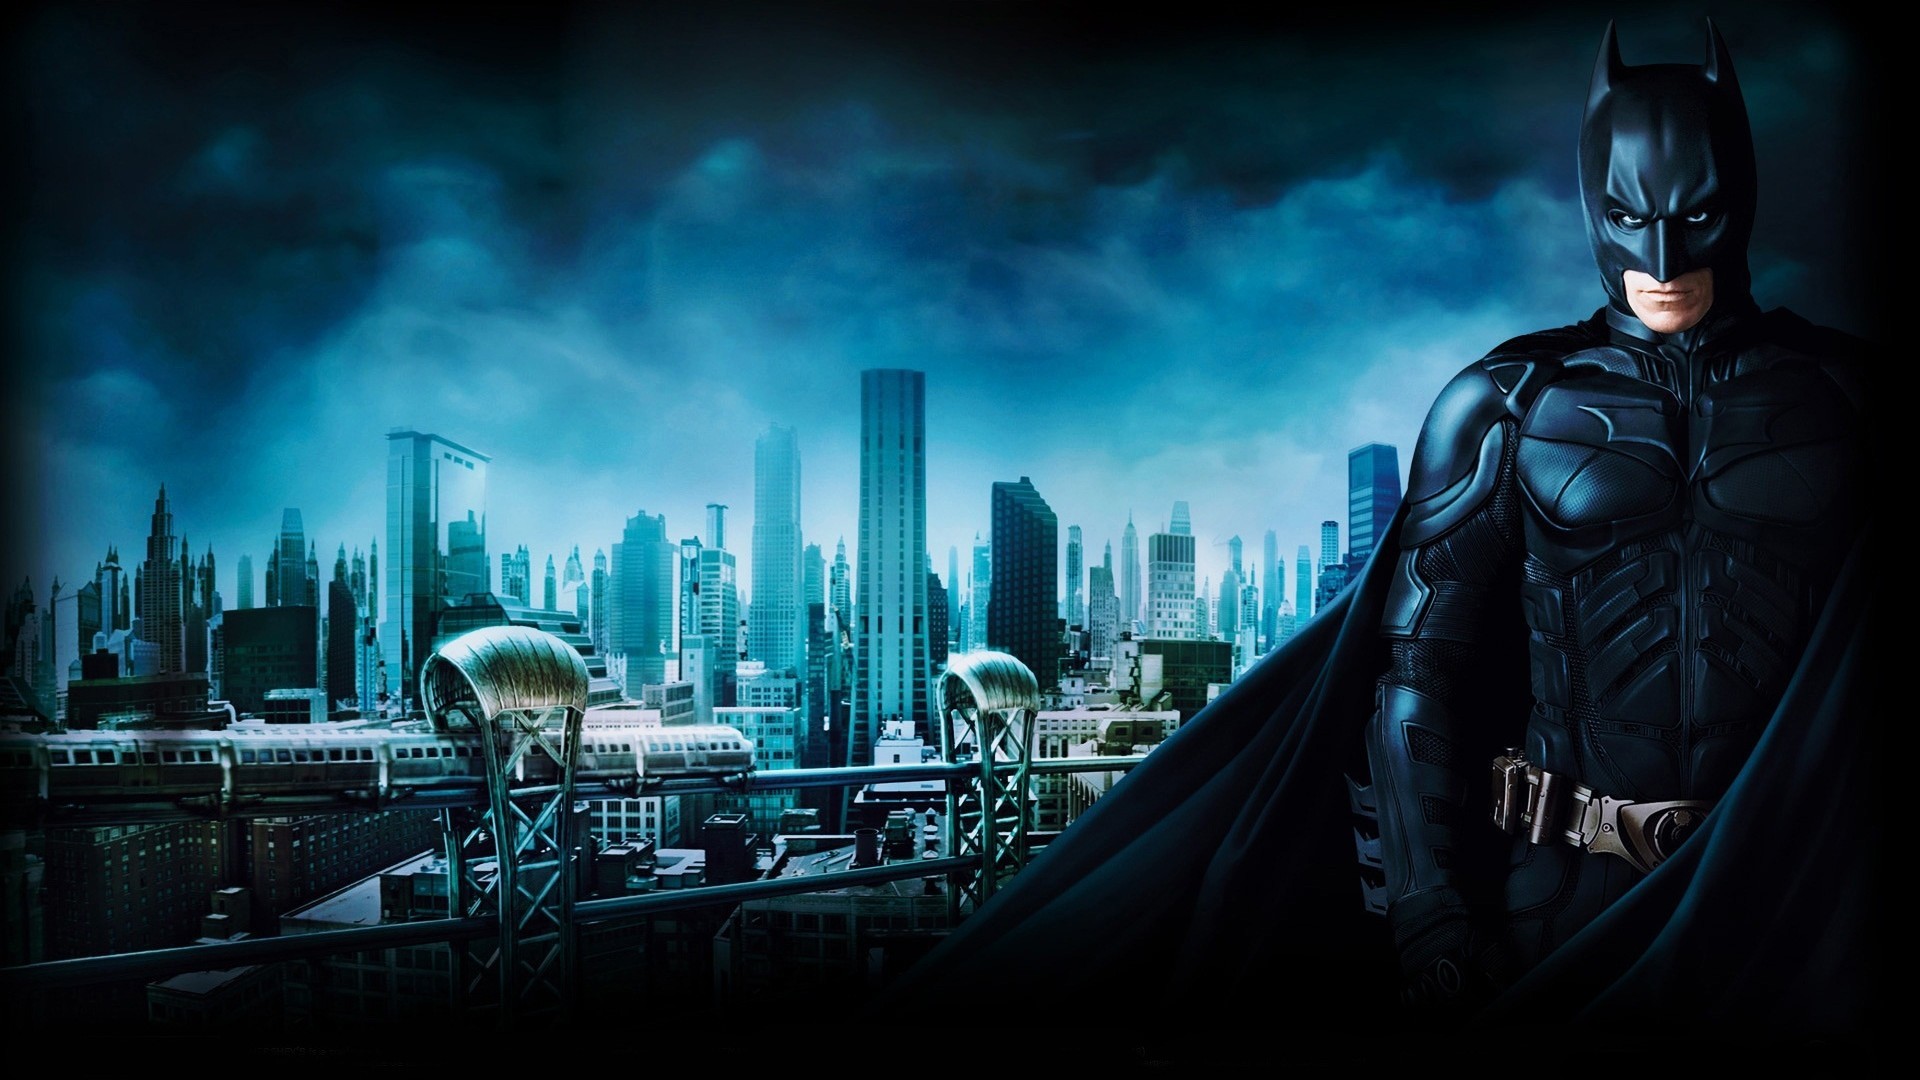 1920x1080 Batman Begins (2005) Images Begins (2005) Movie ...